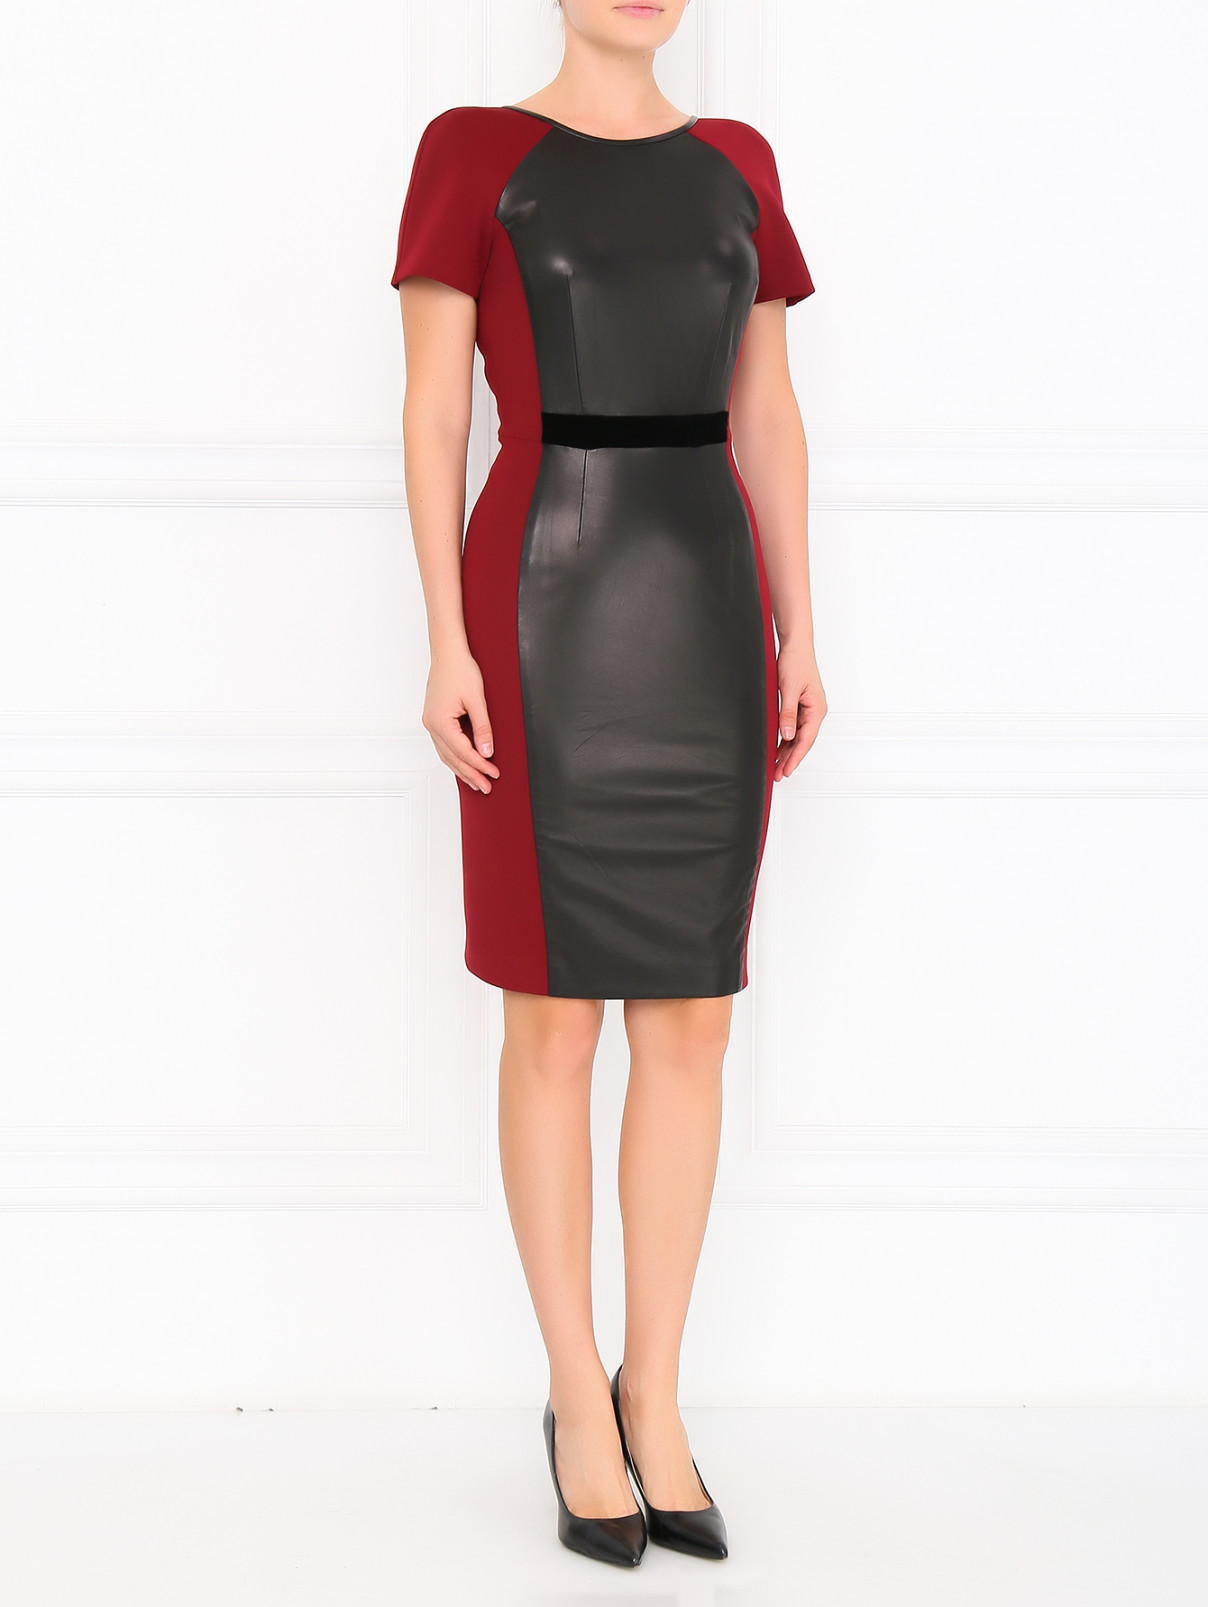 Платье-футляр с вставками из кожи Kira Plastinina  –  Модель Общий вид  – Цвет:  Красный